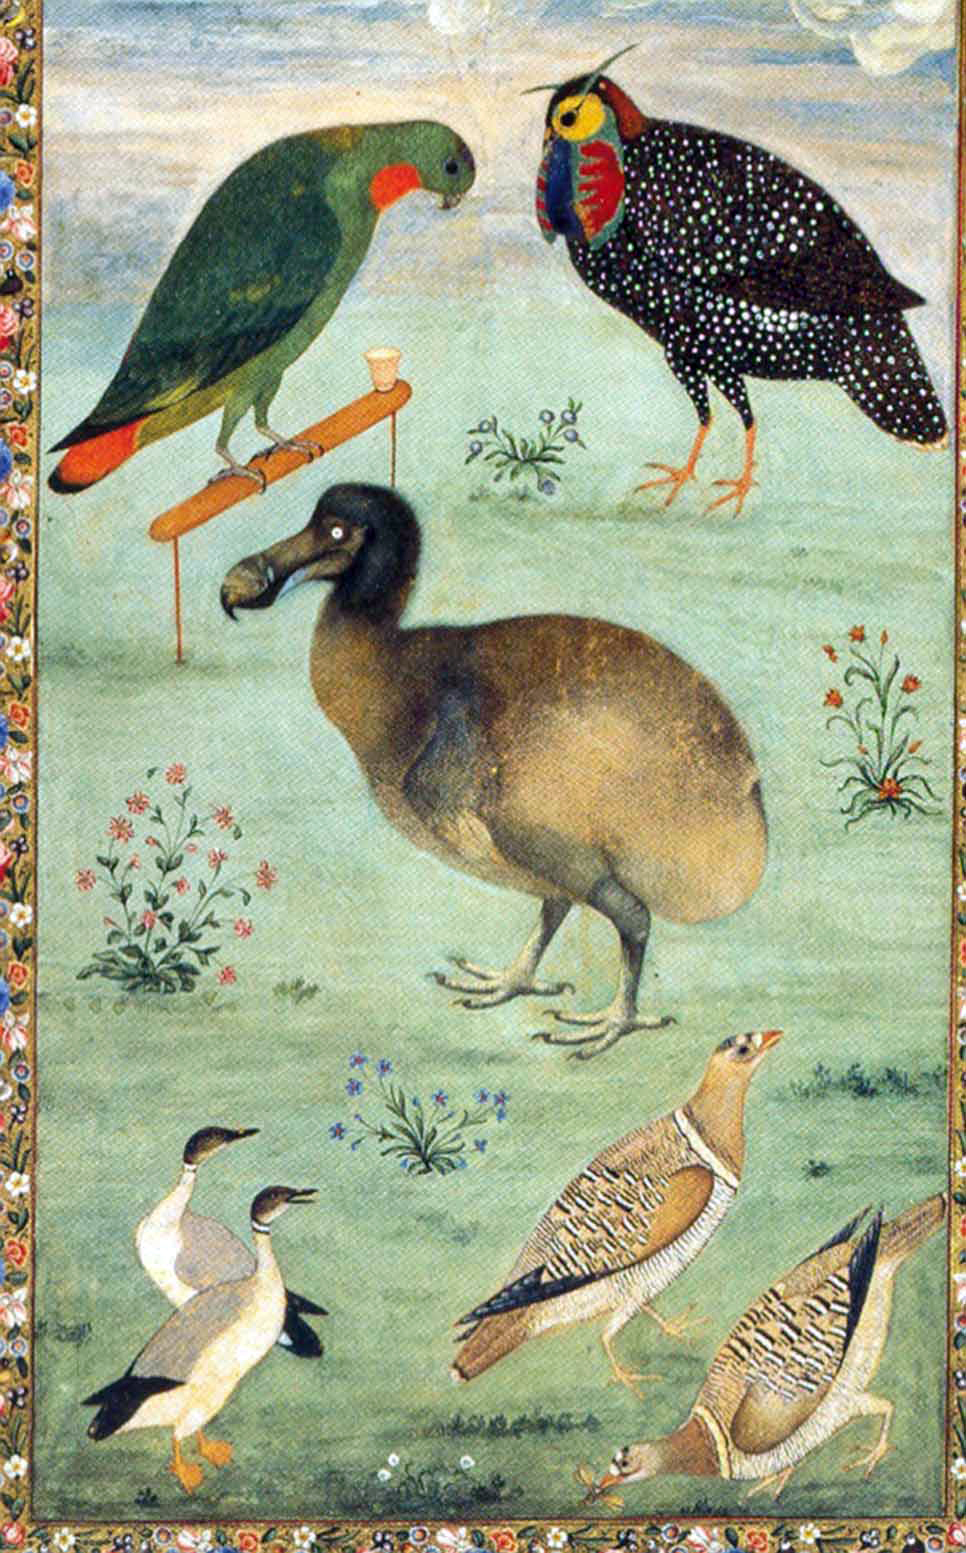 dodo taming